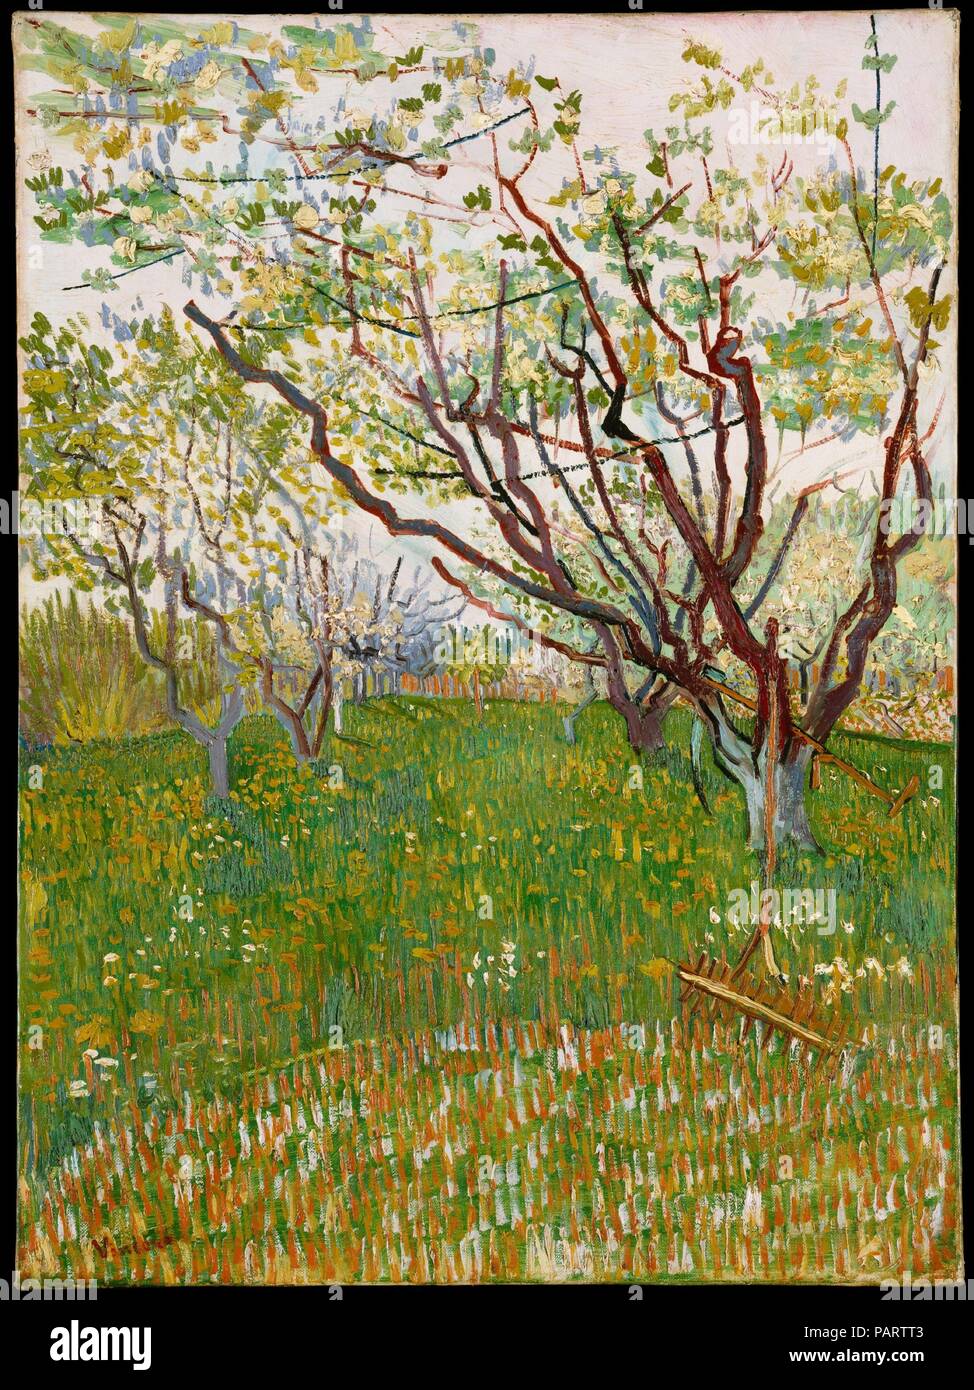 Die blühenden Obstgarten. Künstler: Vincent Van Gogh (Niederländisch, Zundert 1853-1890 Auvers-sur-Oise). Abmessungen: 28 1/2 x 21 in. (72,4 x 53,3 cm). Datum: 1888. Die Ankunft des Frühlings in Arles 1888 fand Van Gogh' in einer Wut der Arbeit." Als er zu seinem Bruder Theo schrieb: "Die Bäume beginnen zu blühen und ich möchte eine provenzalische Obstgarten von großer Fröhlichkeit zu tun.' zwischen Ende März und Ende April, die Künstler gewidmet 14 Leinwände zum Gegenstand, die in einer Reihe von Größen, Formaten und Stilen. Diese Komposition, die durch die Kantigen, länglichen Zweige der knospenden Bäumen dominiert, zeugt von Van Gogh's ad Stockfoto